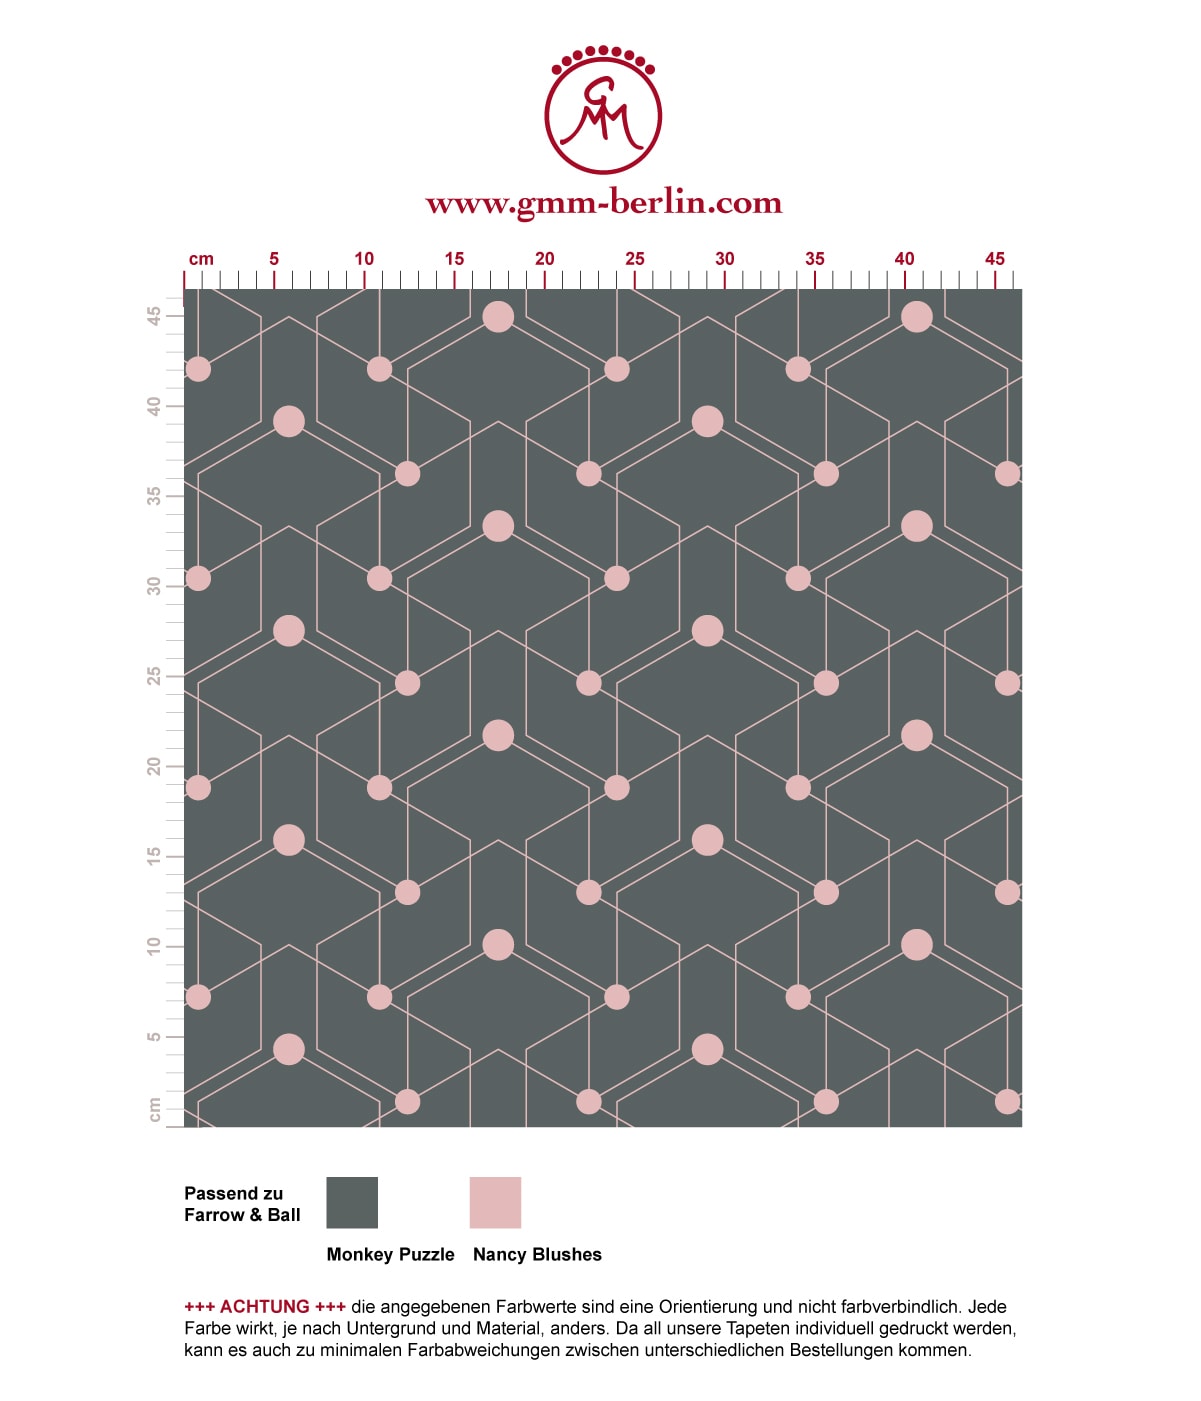 Schicke moderne grafische Tapete "Celestial Dots" kleines Muster in grau rosa angepasst an Farrow & Ball Wandfarben. Aus dem GMM-BERLIN.com Sortiment: Schöne Tapeten in der Farbe: rosa